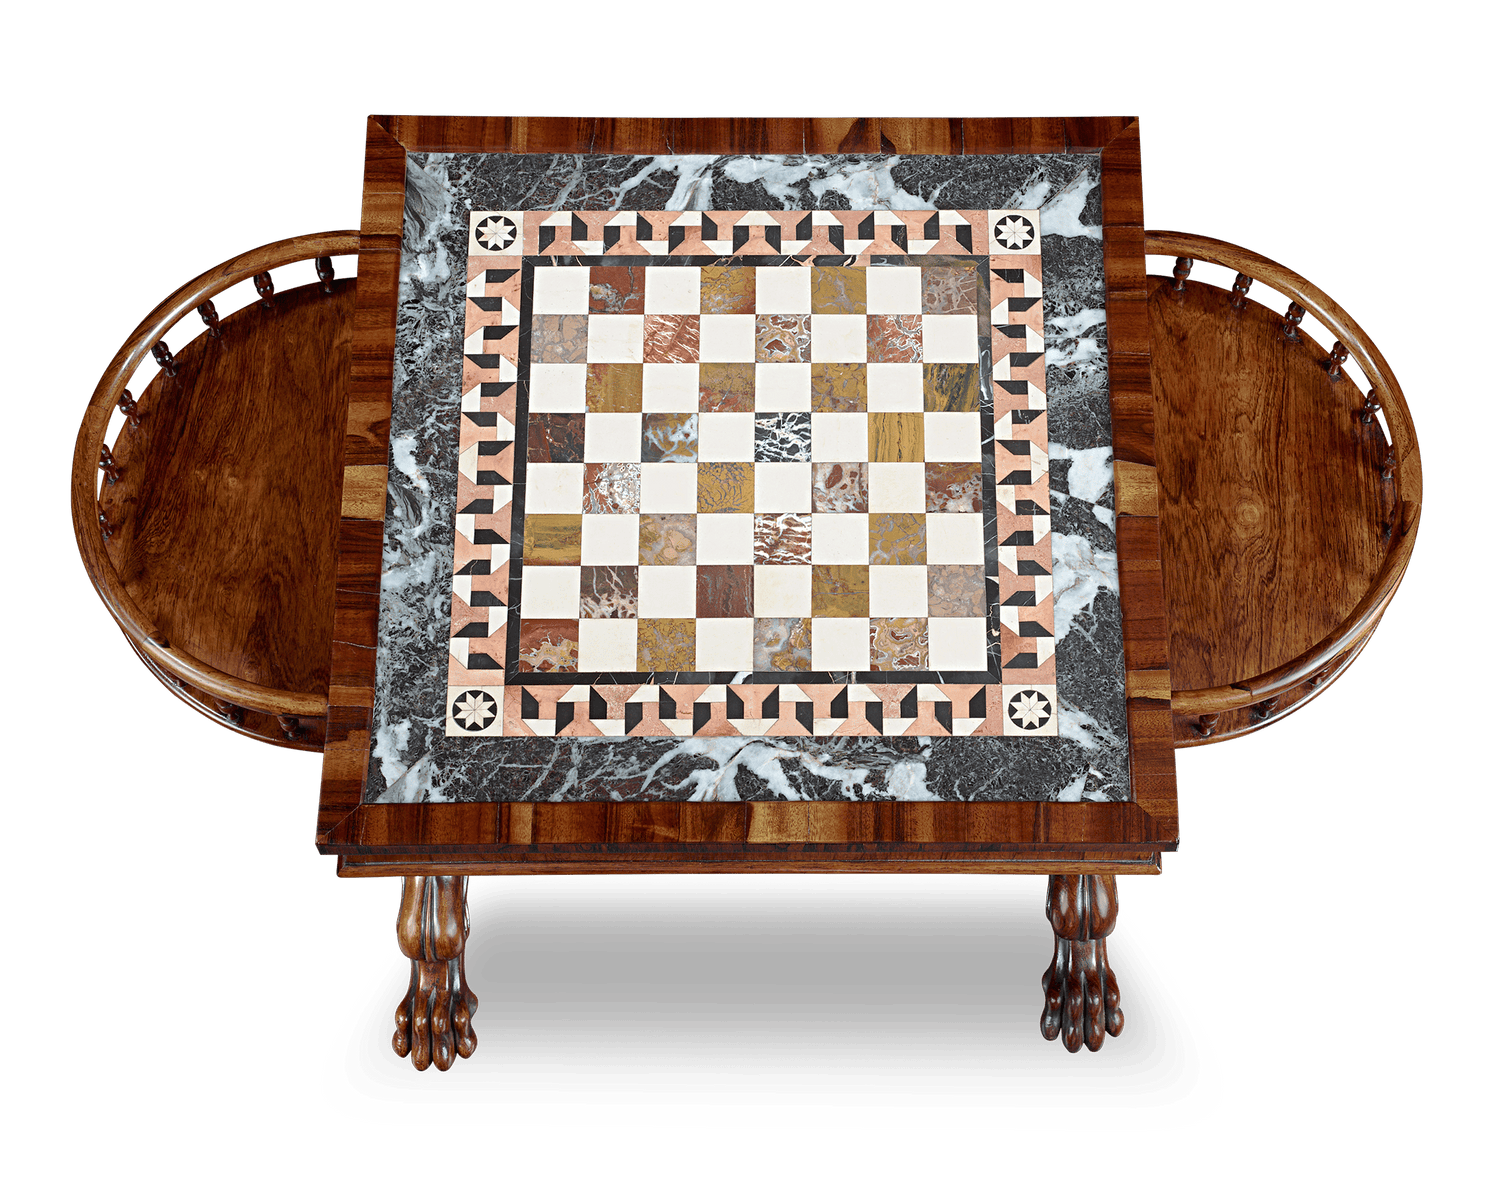 William IV-Period Specimen Chess Table